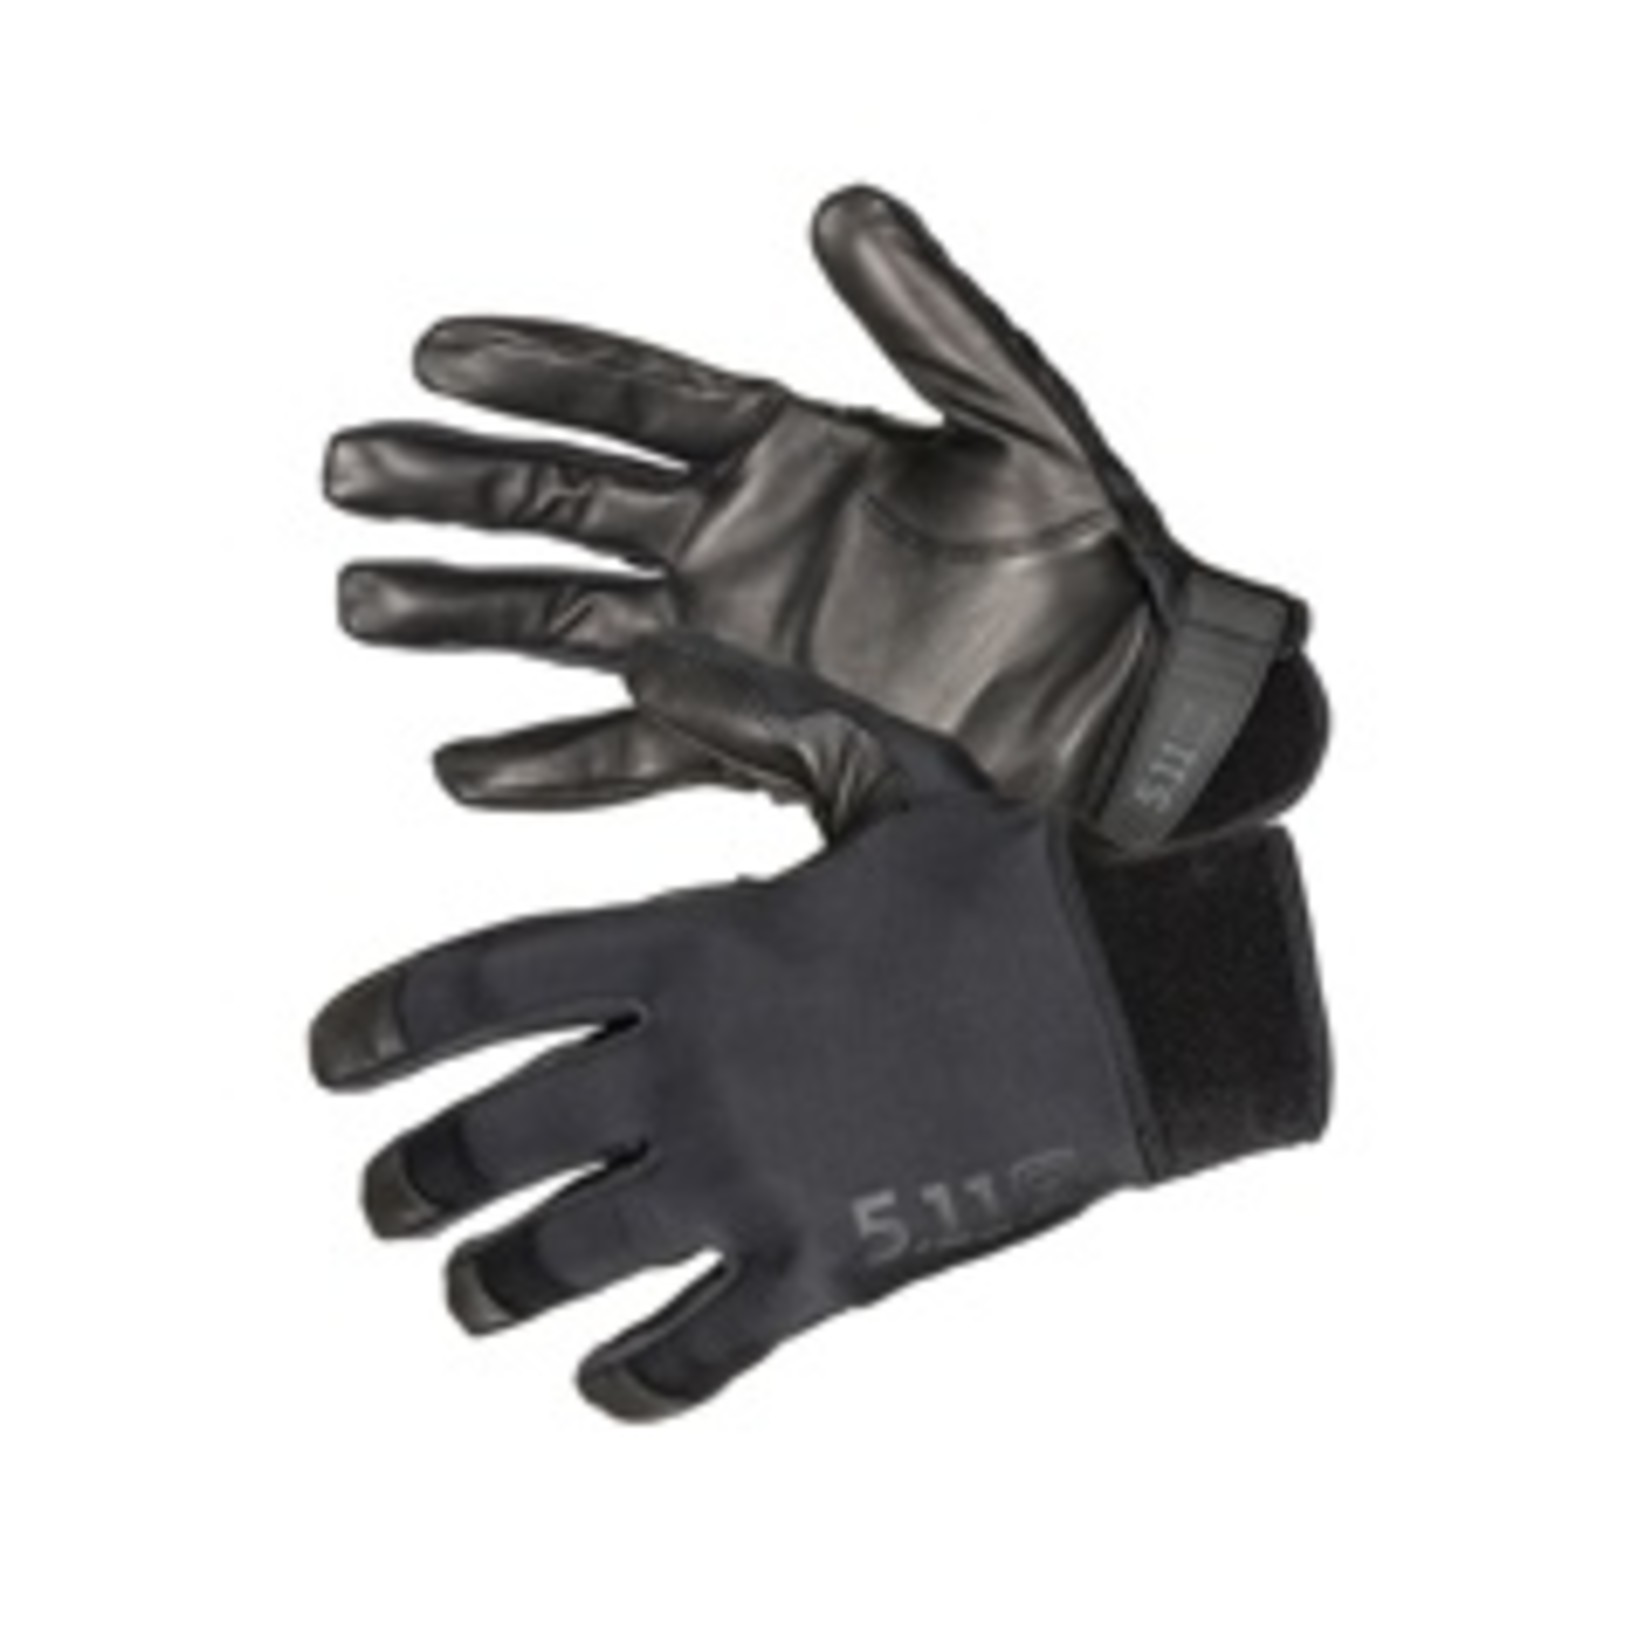 5.11 Taclite 2 gloves